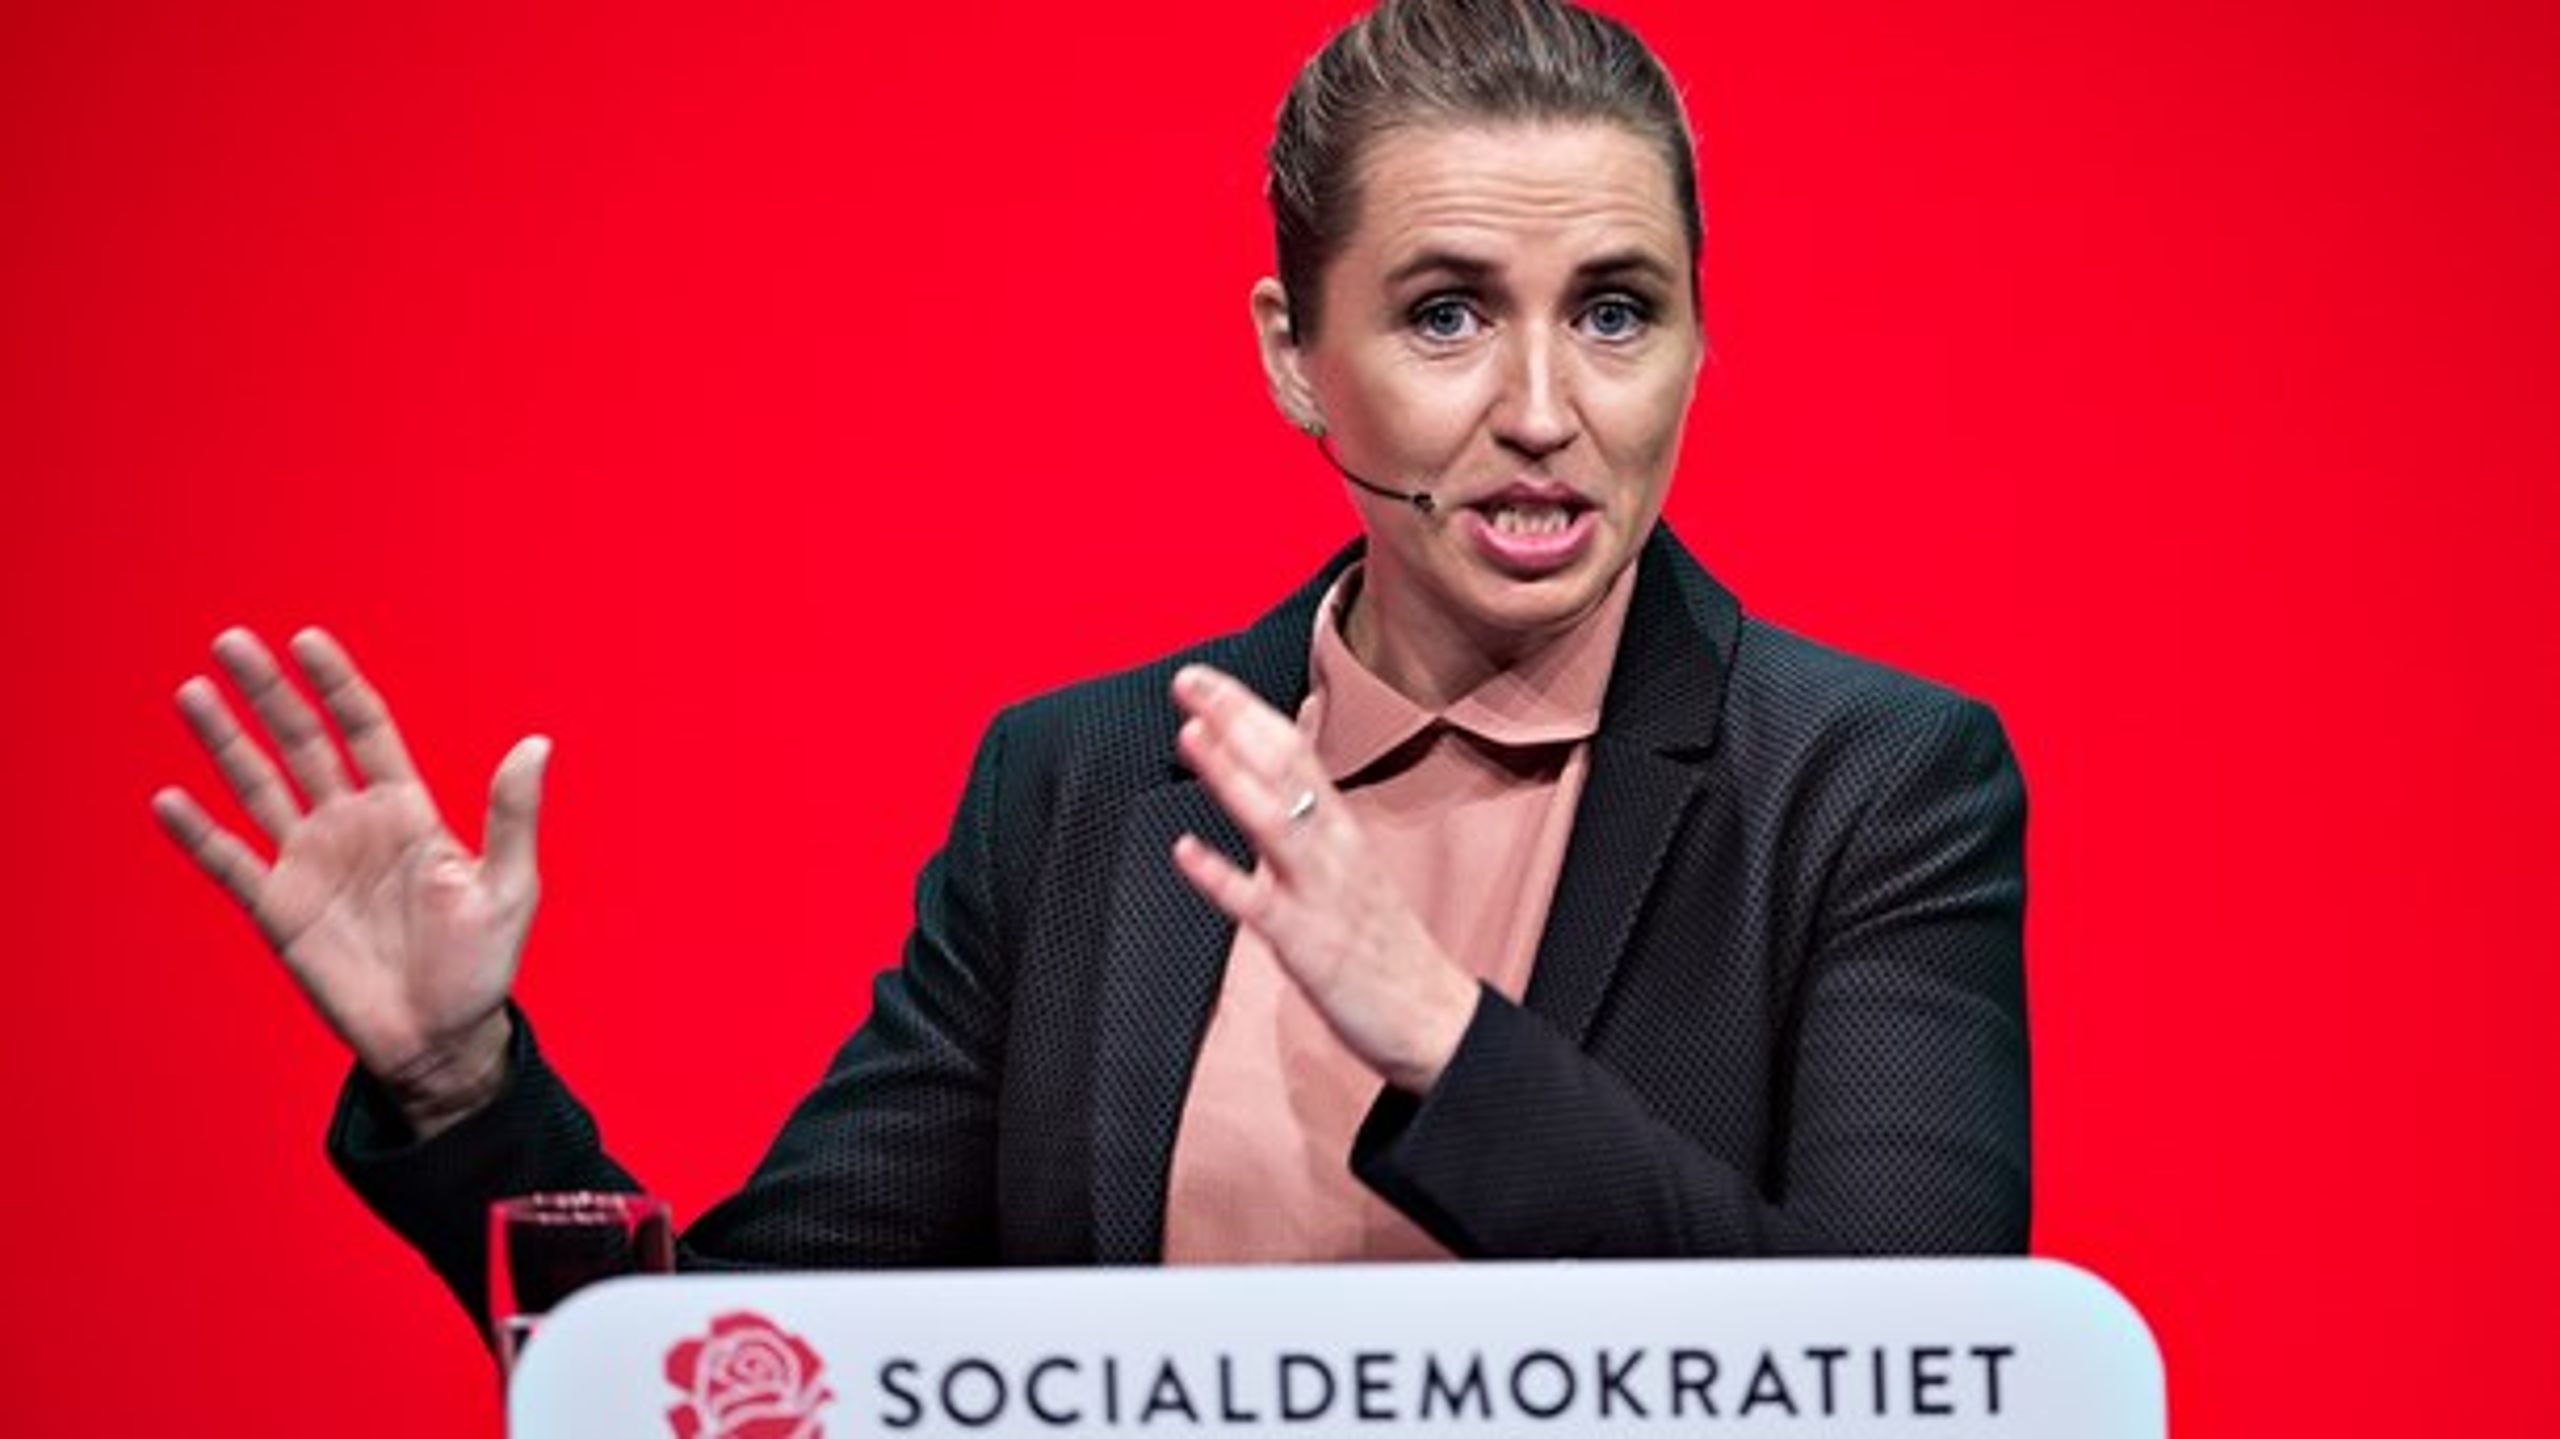 Socialdemokratiet holder Kongres i weekenden. Kan Mette Frederiksen samle oppositionen? Altingets chefredaktør er i studiet.